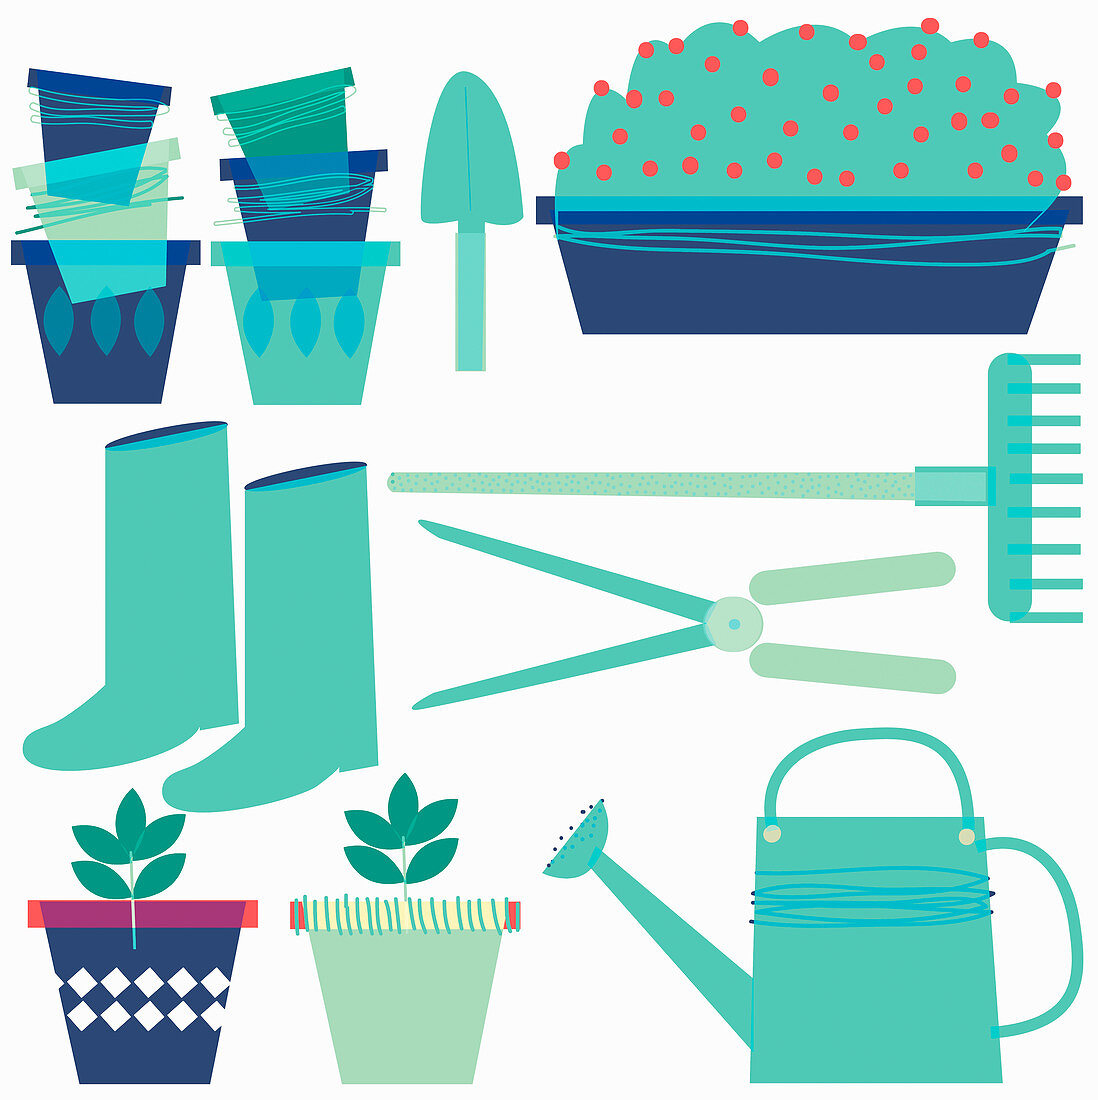 Gardening equipment, illustration